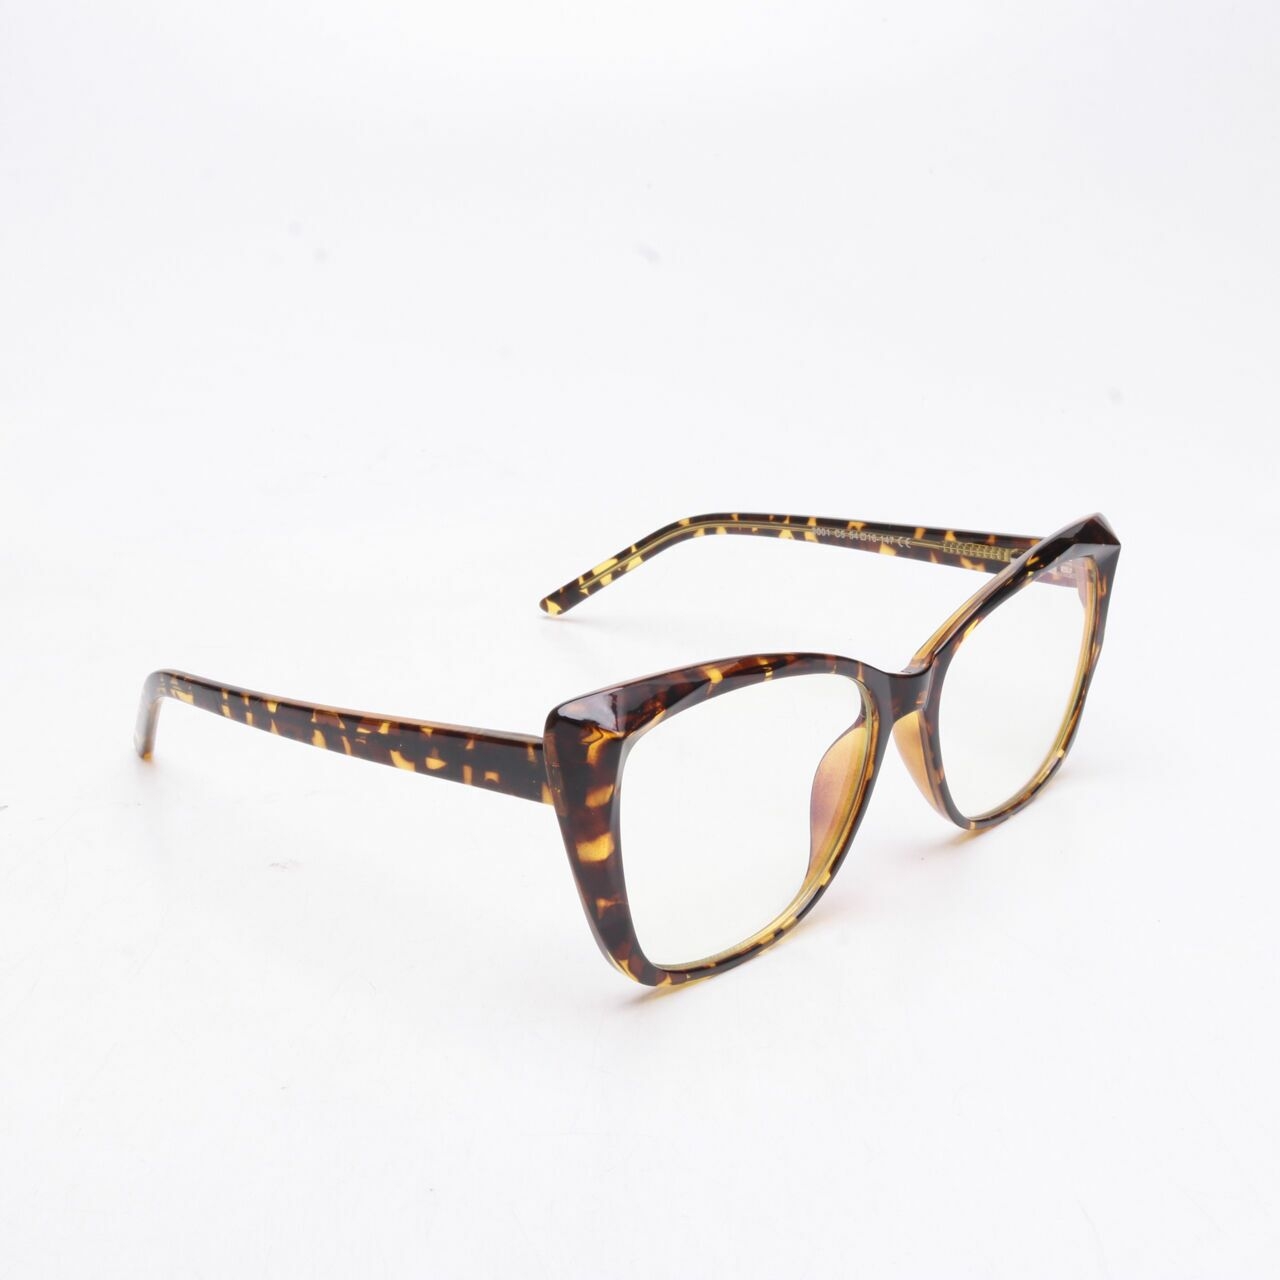 Private Collection Brown & Cream Leopard Sunglasses